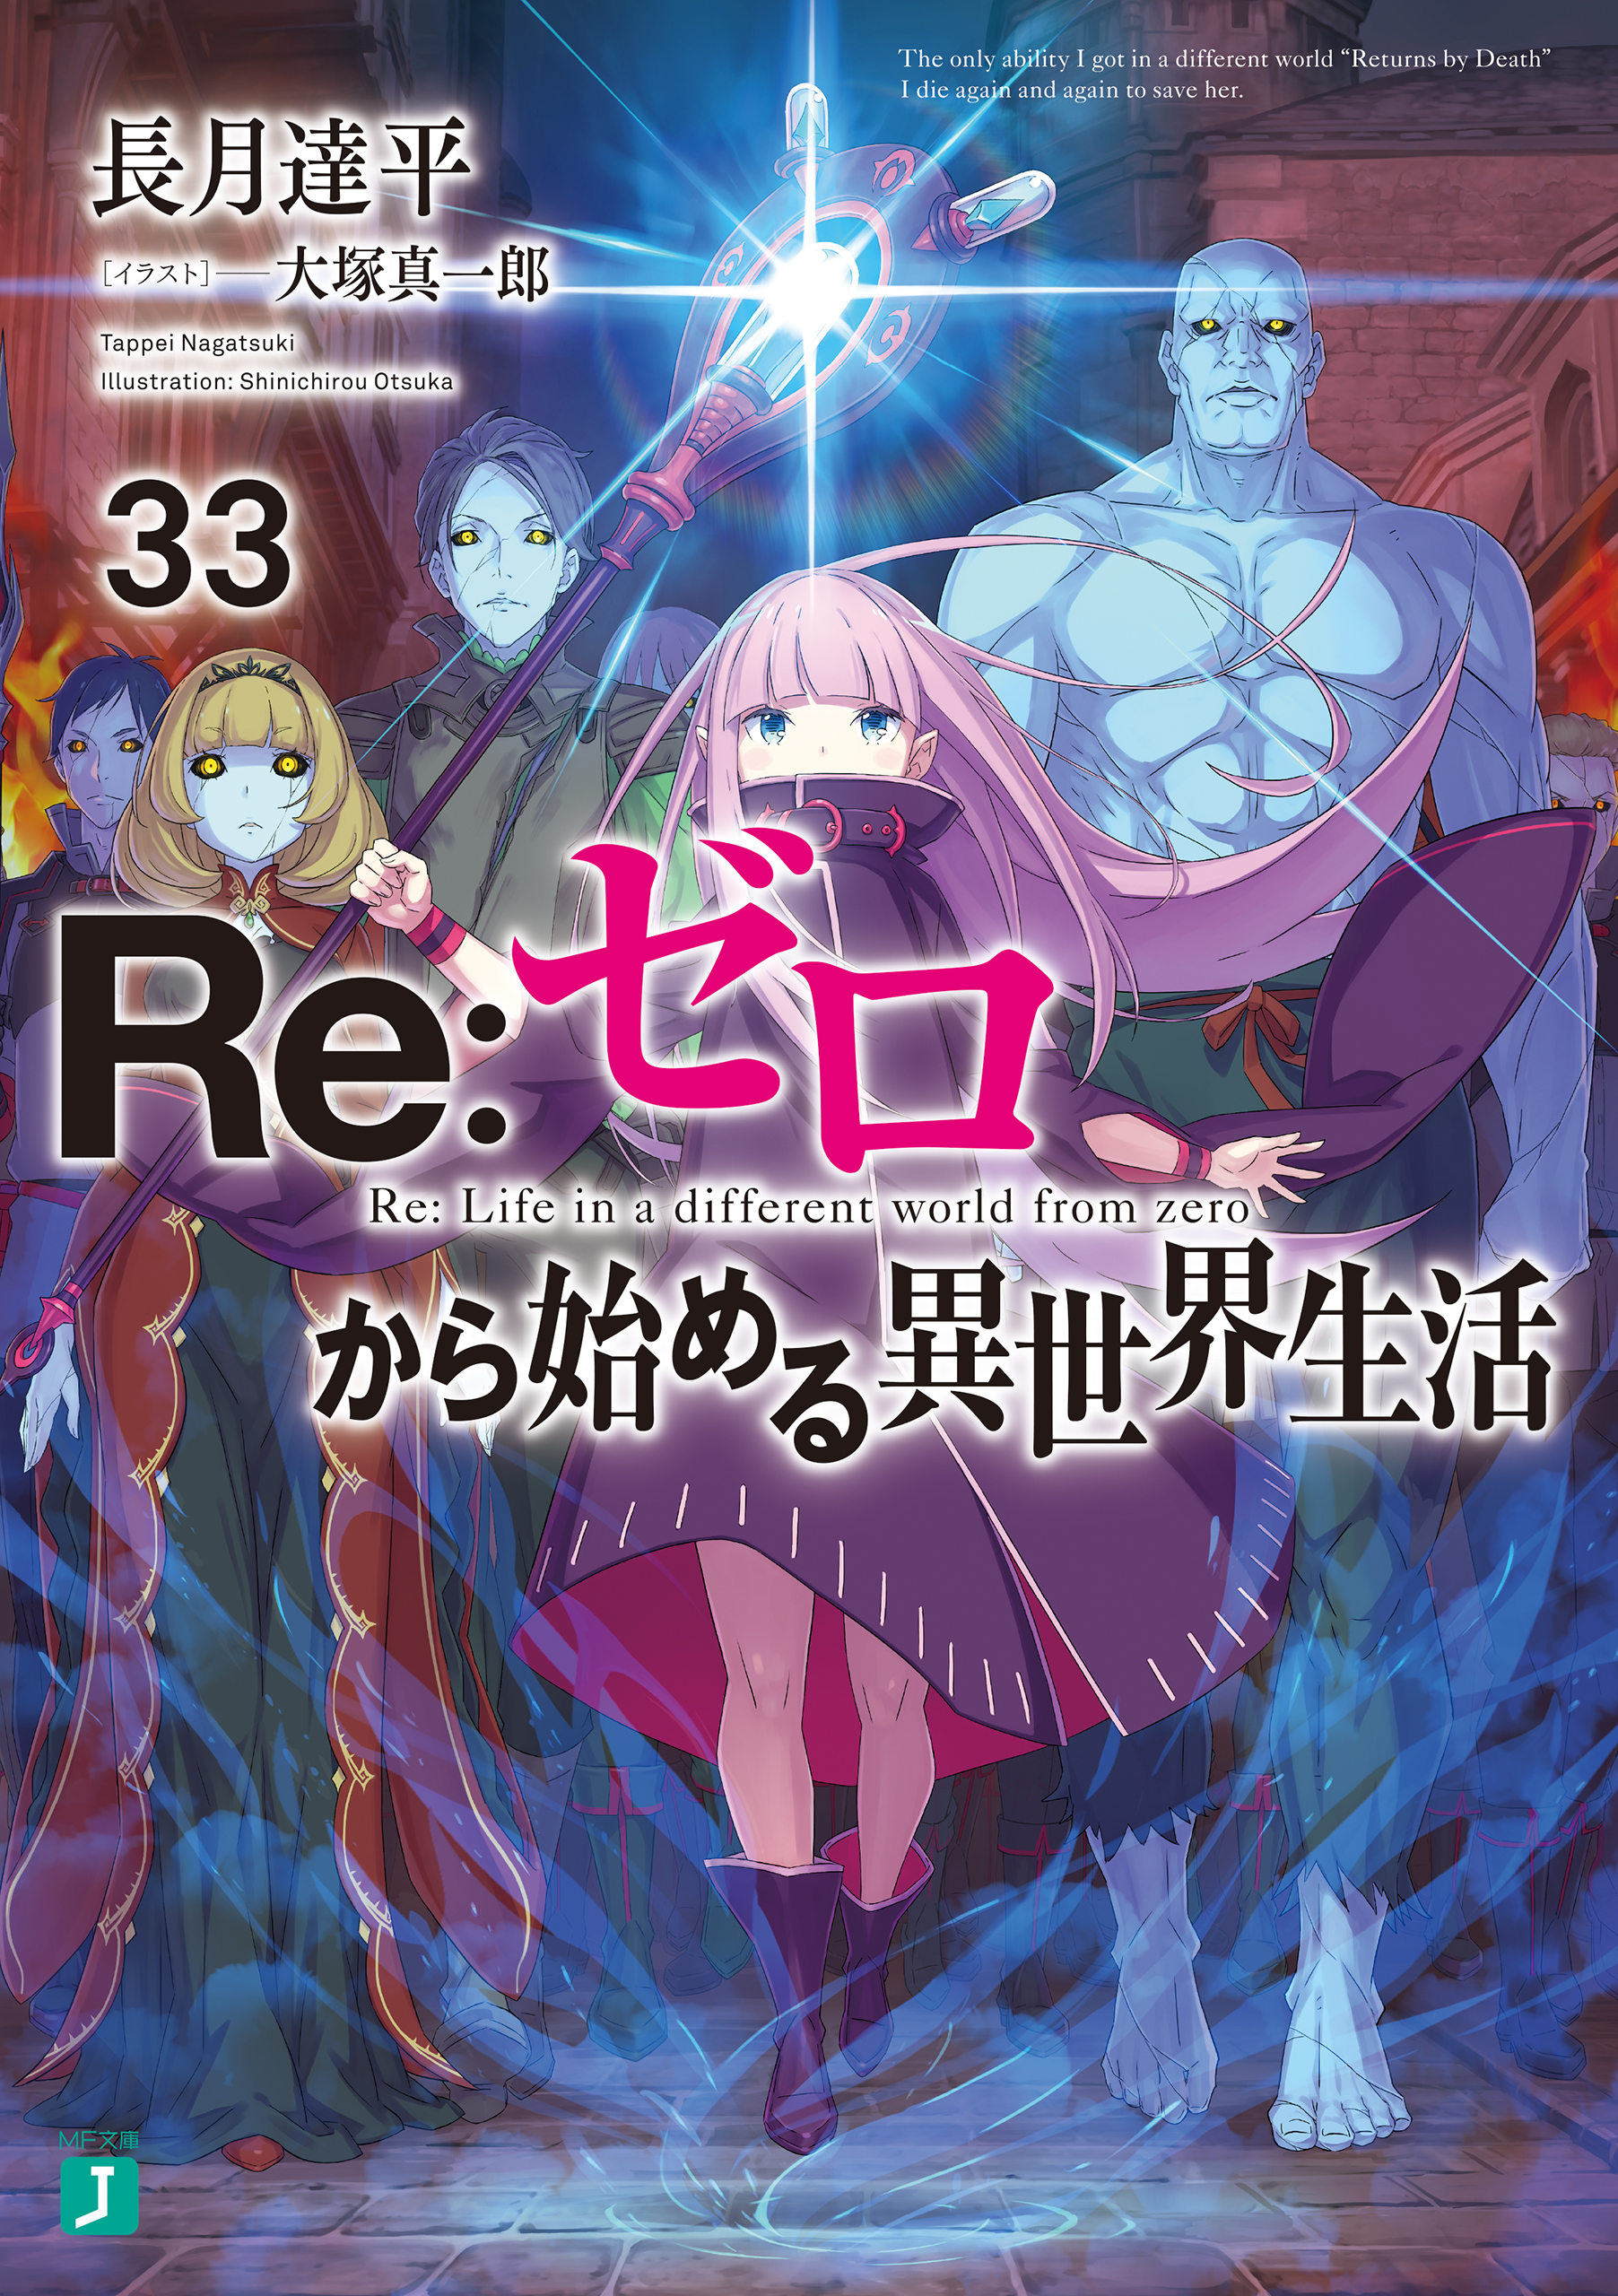 Re:Zero kara Hajimeru Isekai Seikatsu Season 2 - Episode 9 discussion : r/ anime